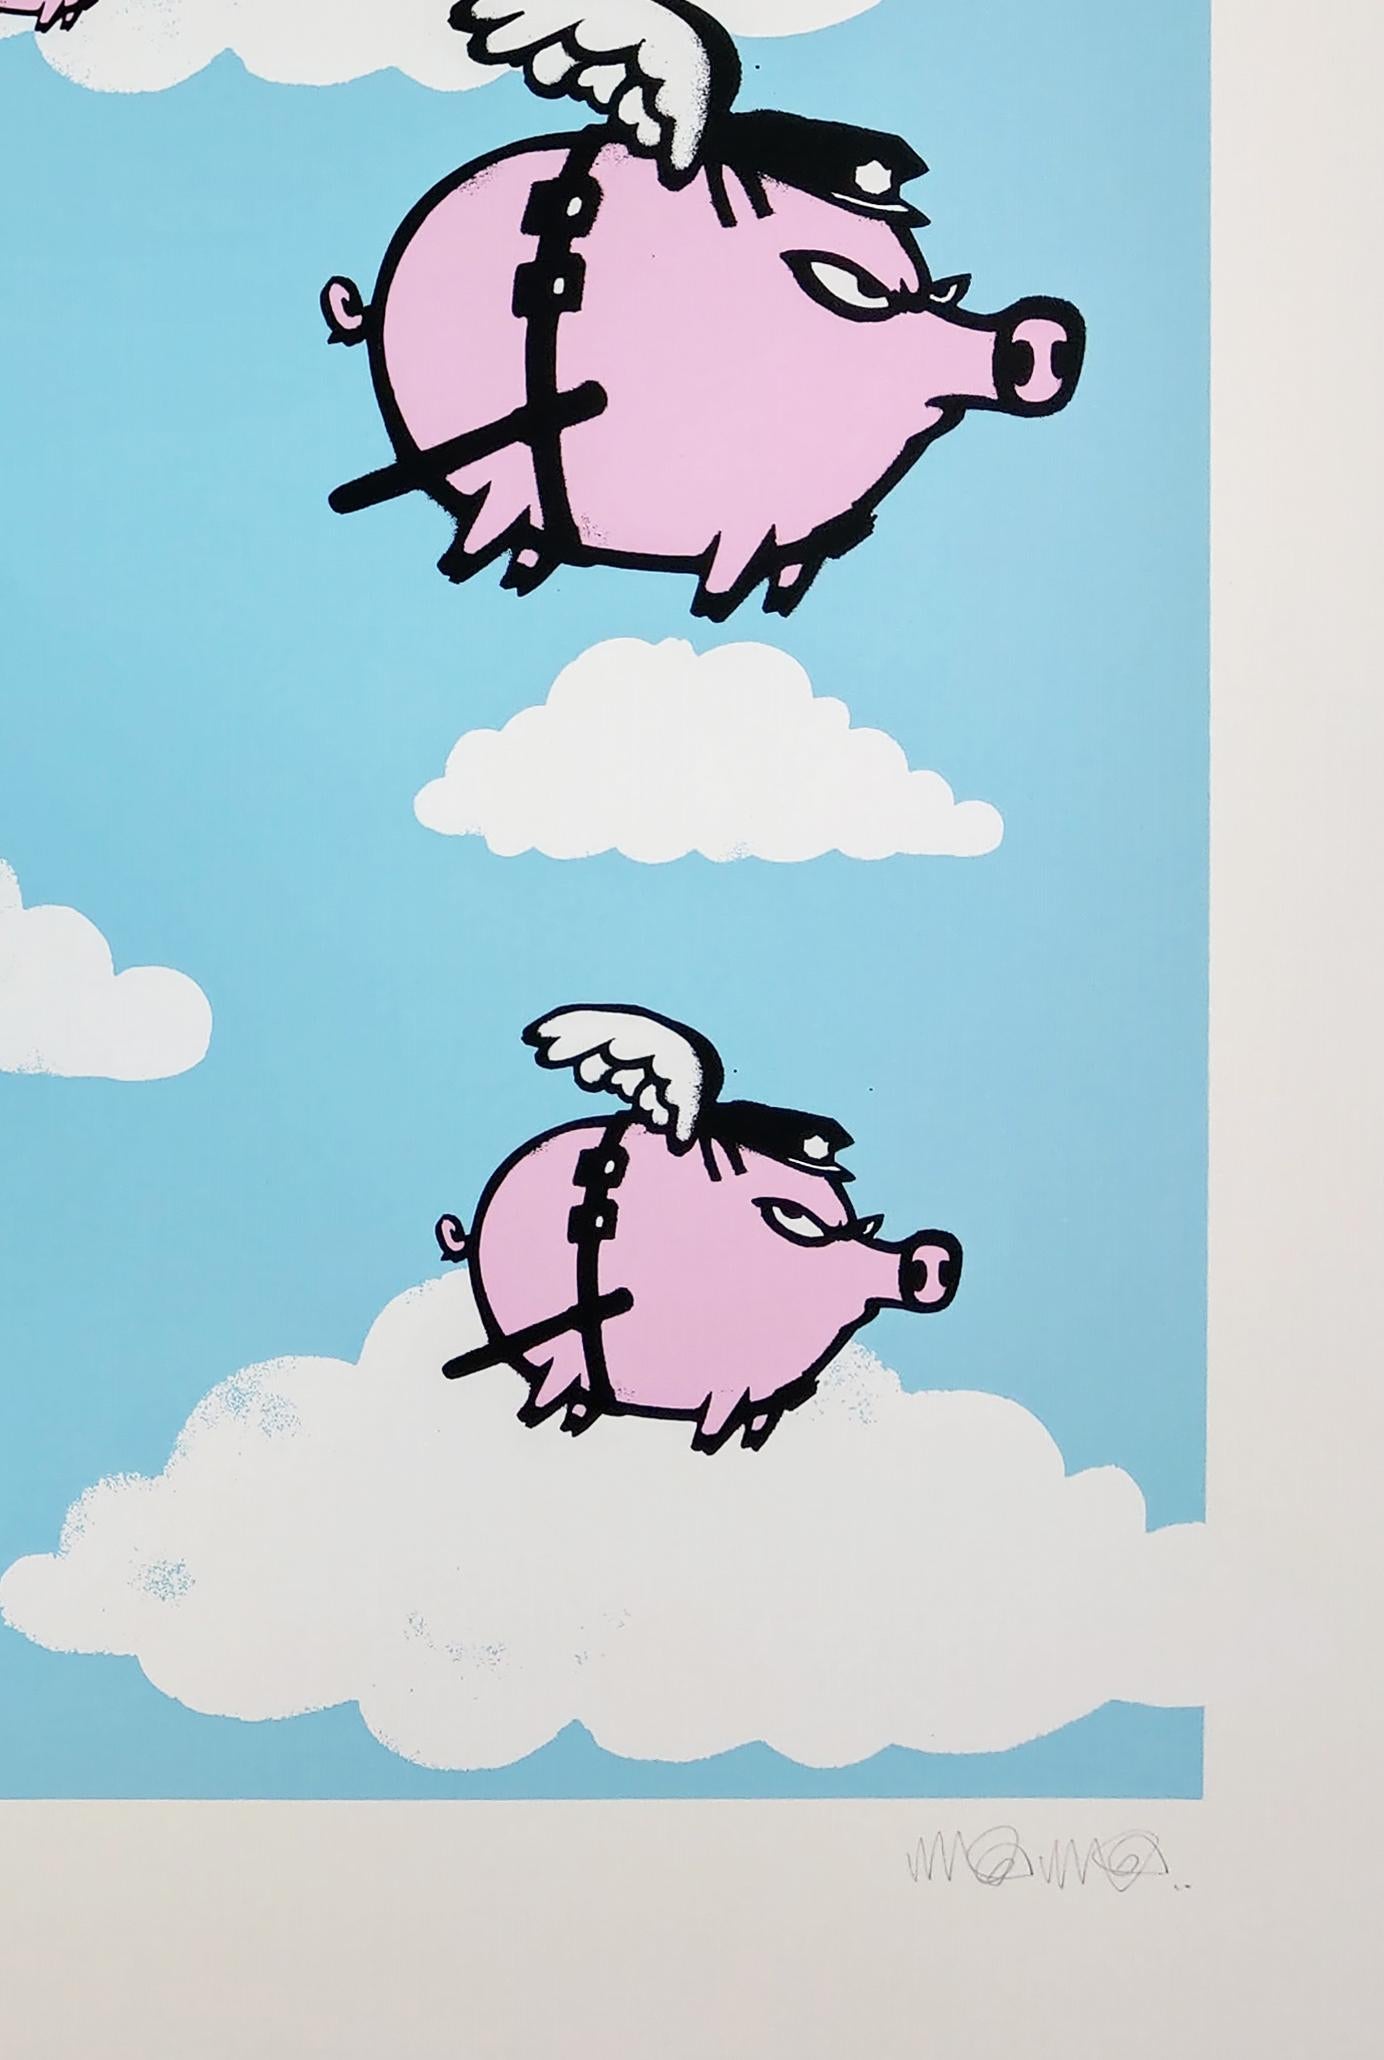 Pigs Might Fly, 2016 sérigraphie avec une dimension de 31 1/2 × 31 1/2 in et 80 × 80 cm. 
Edition de 45 exemplaires signés et numérotés par Mau Mau. 

Mau Mau est connu pour ses impressions d'art graffiti politique. Mau Mau a créé des œuvres pour